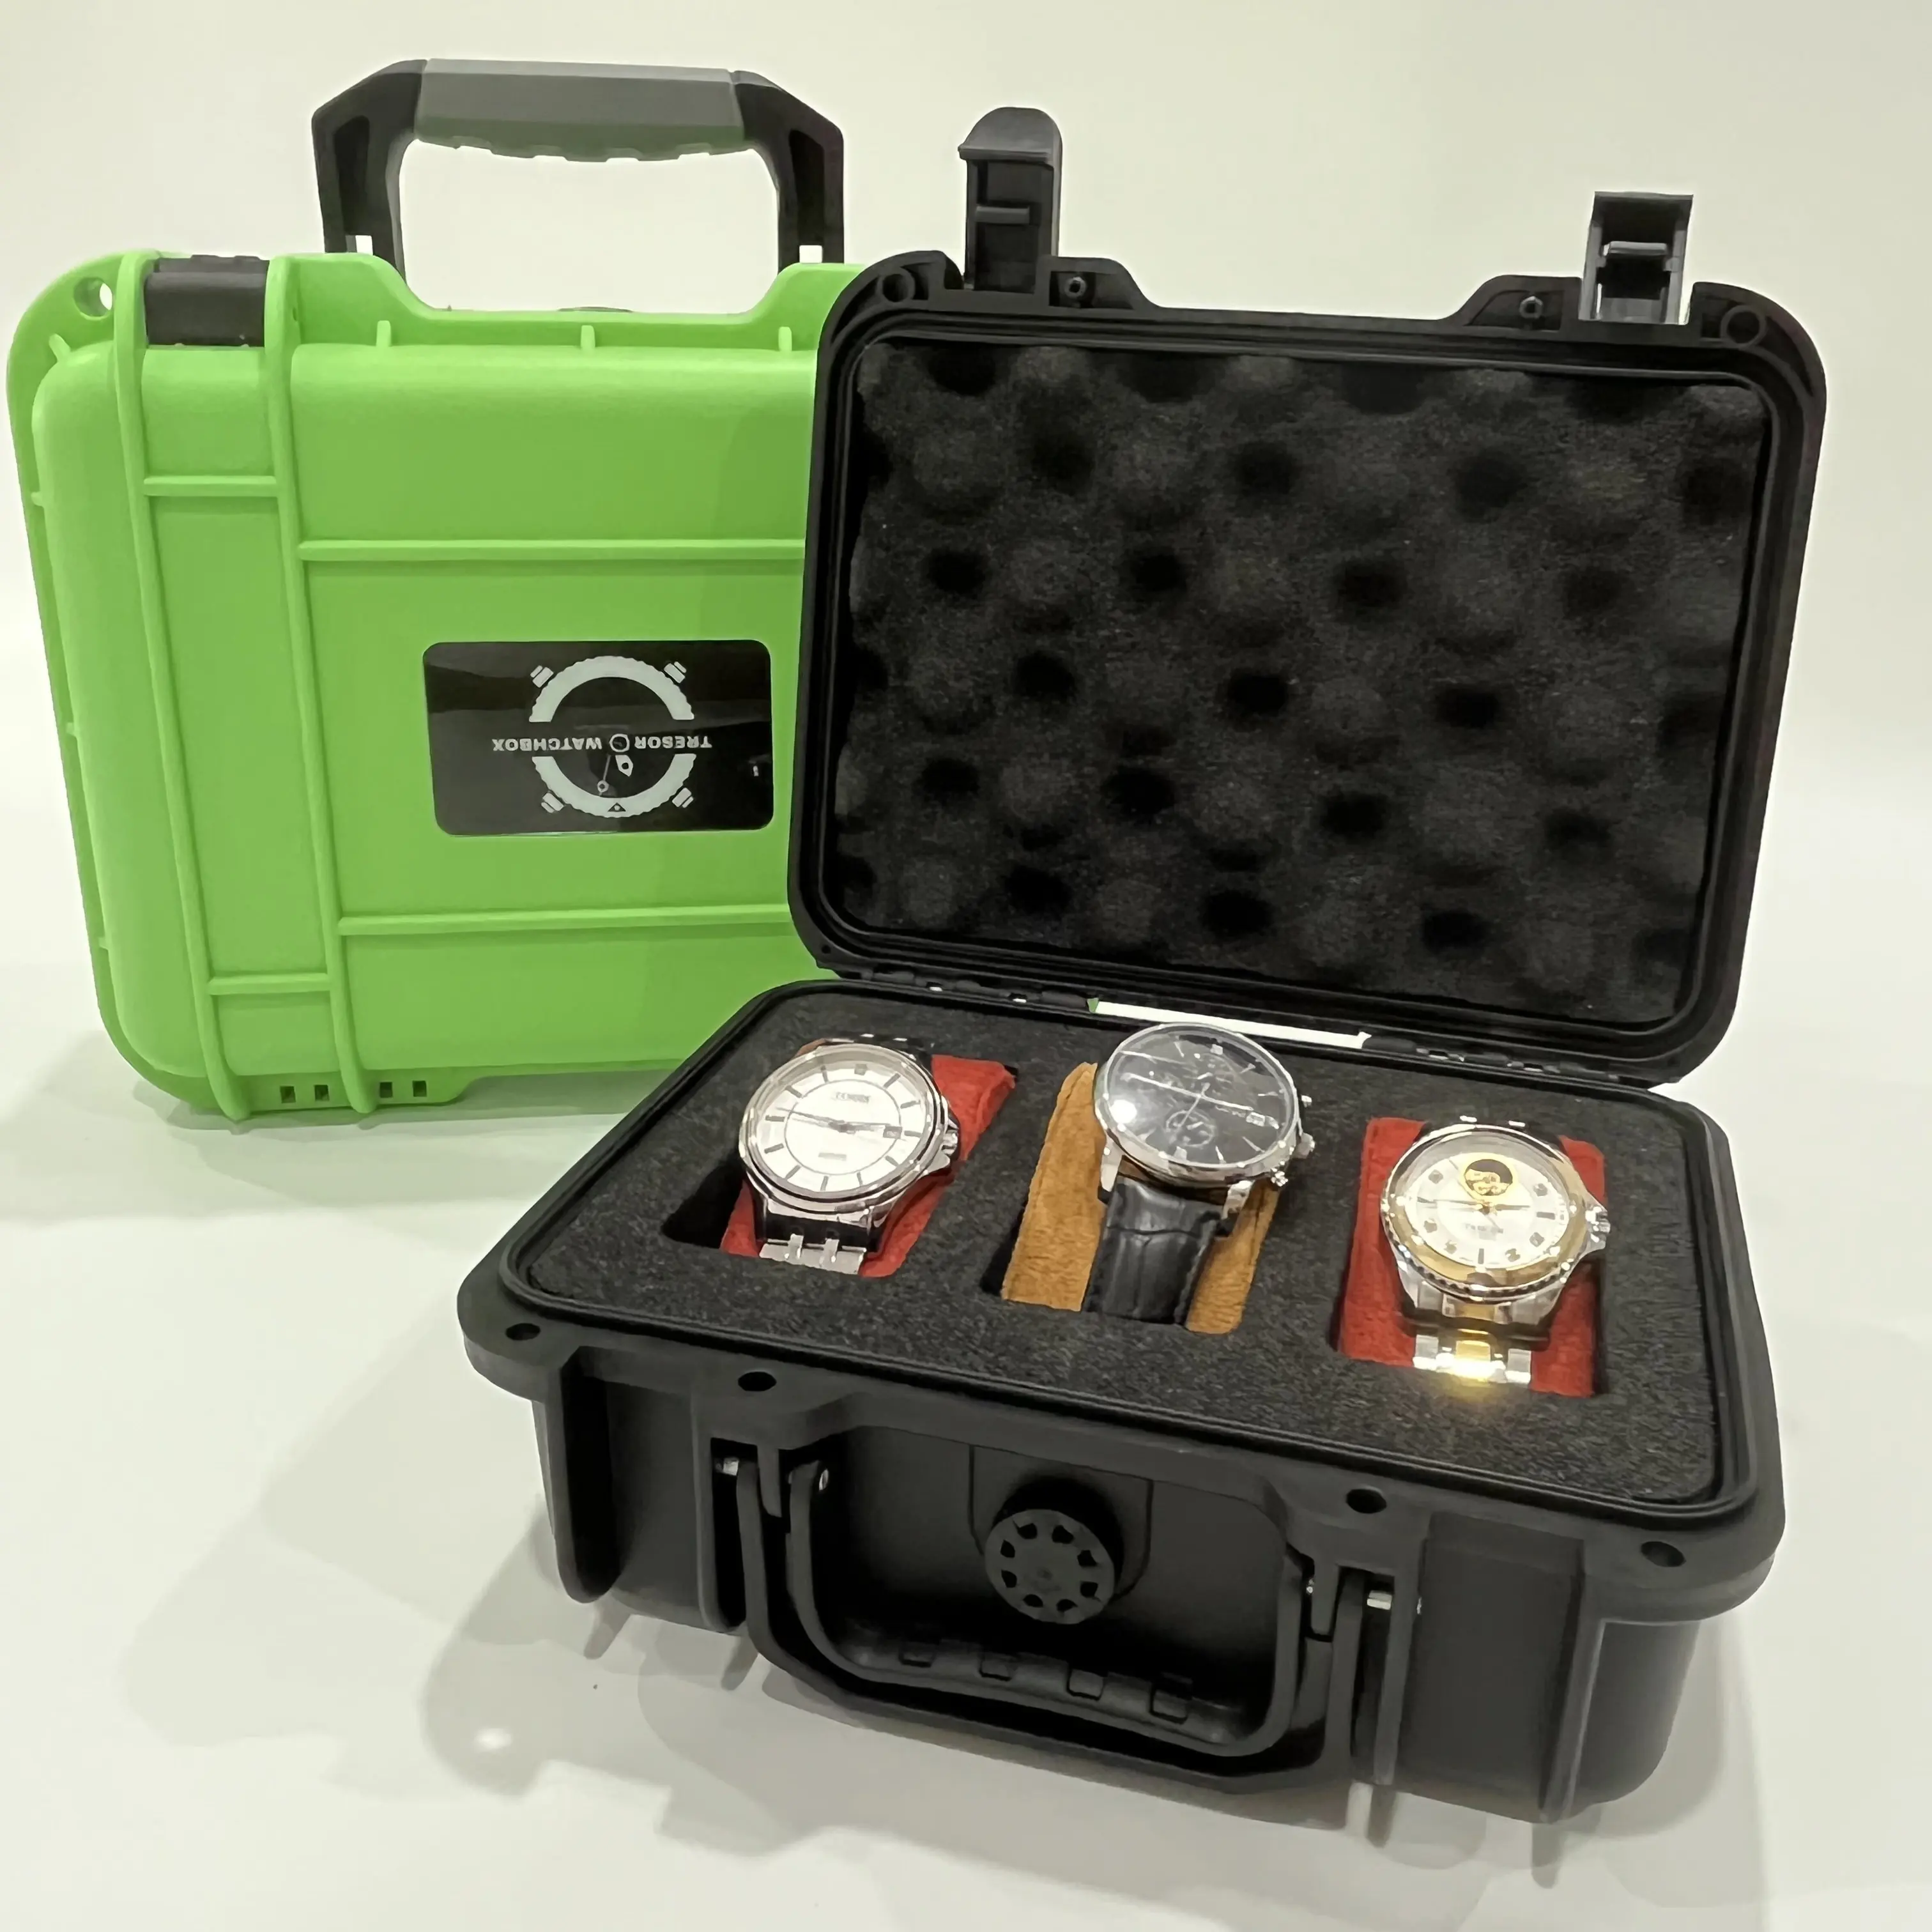 Custodia rigida personalizzata in plastica ABS custodia per cassetta degli attrezzi in plastica impermeabile con inserto in schiuma EVA scatola per orologi Shadow foam